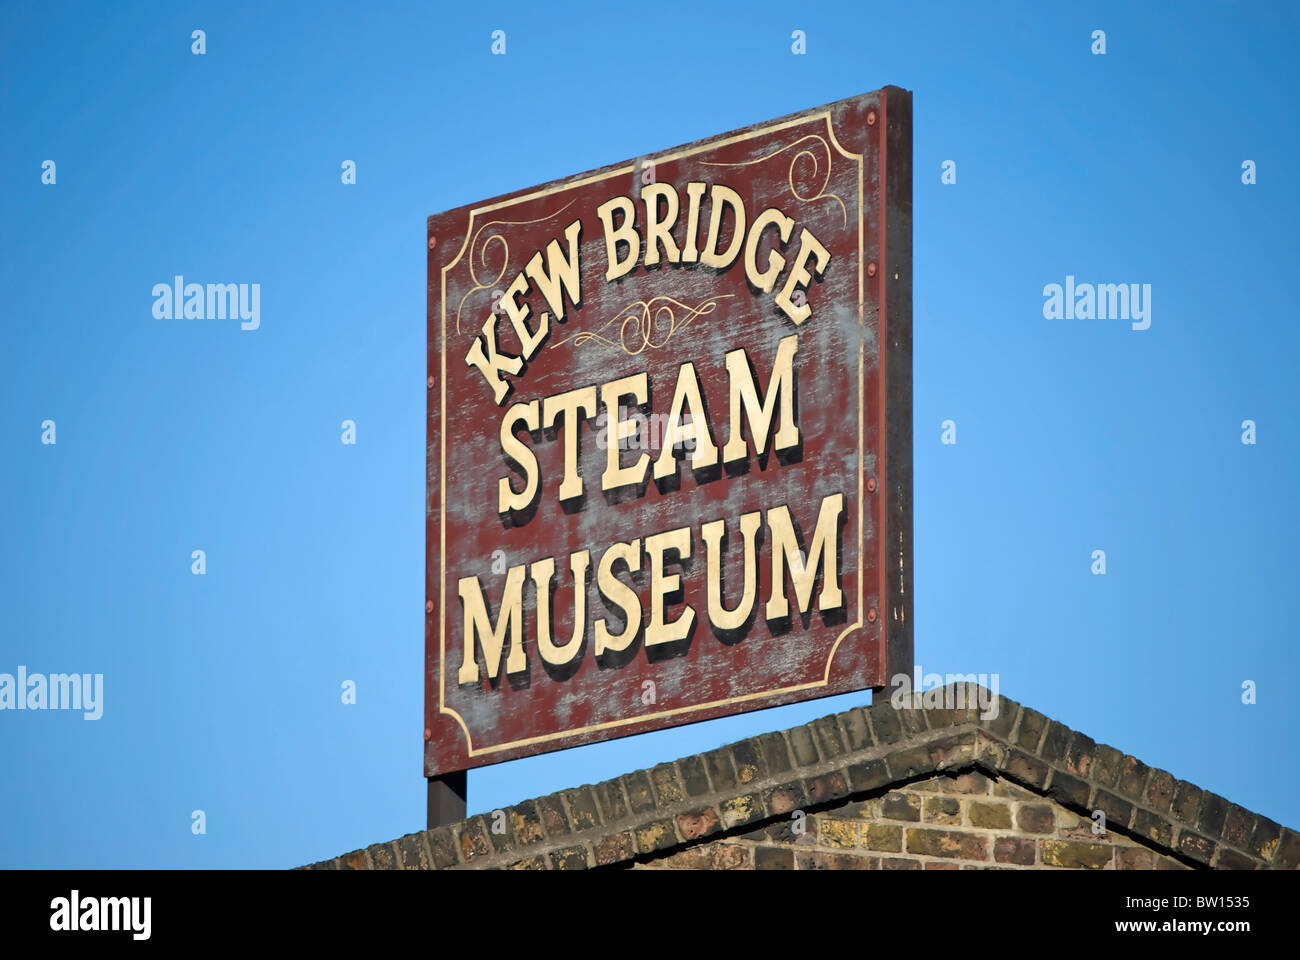 schild für das ehemalige kew Bridge Steam Museum, jetzt das londoner Museum für Wasser und Dampf, brentford, london, england Stockfoto